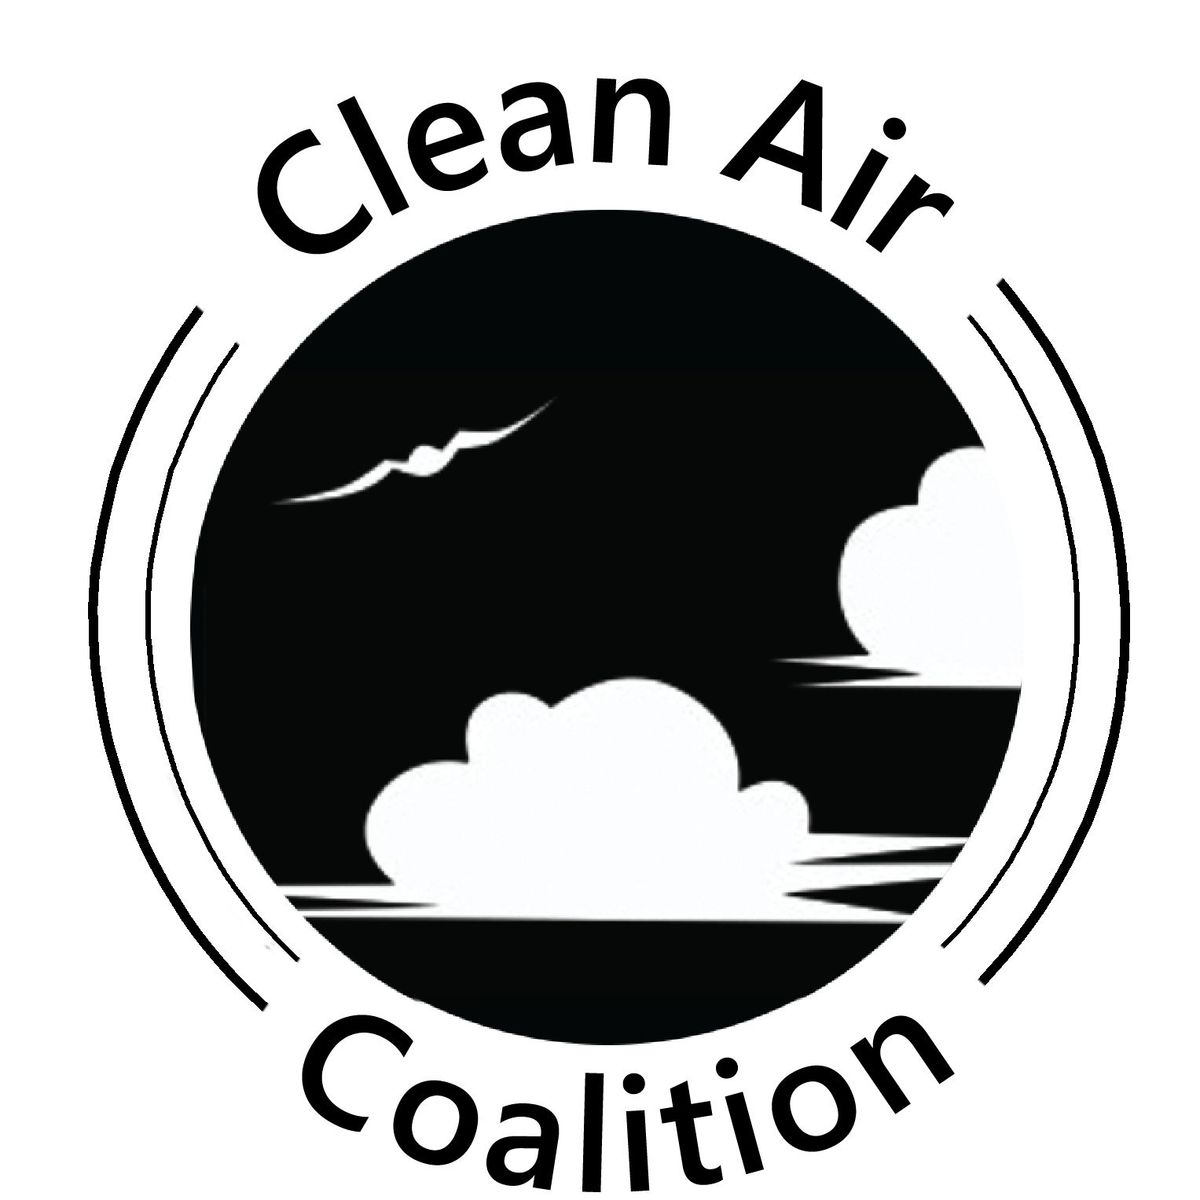 Clean Air Coalition public meeting